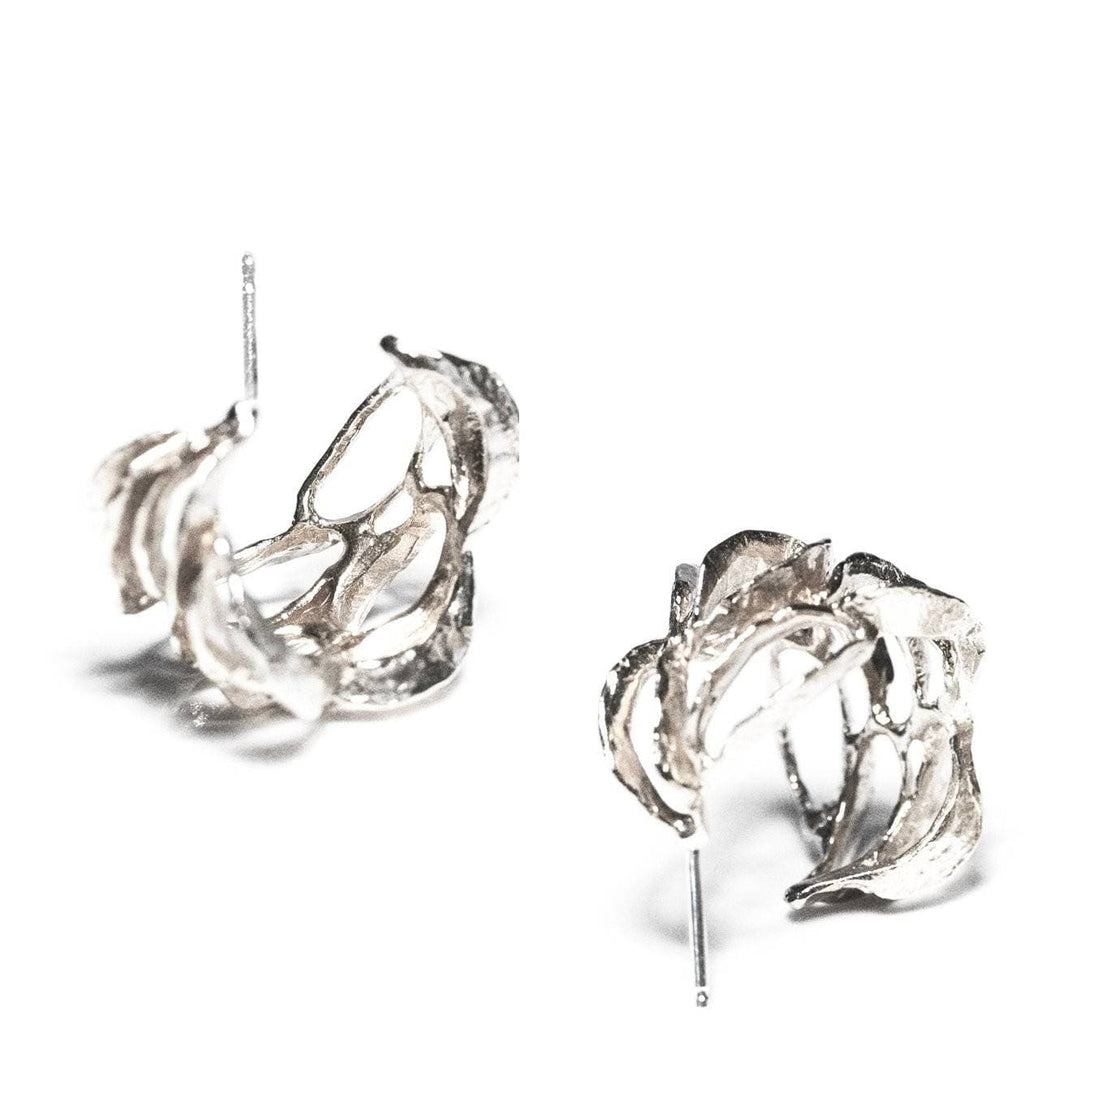 Banksia Hoop Earrings - Silver